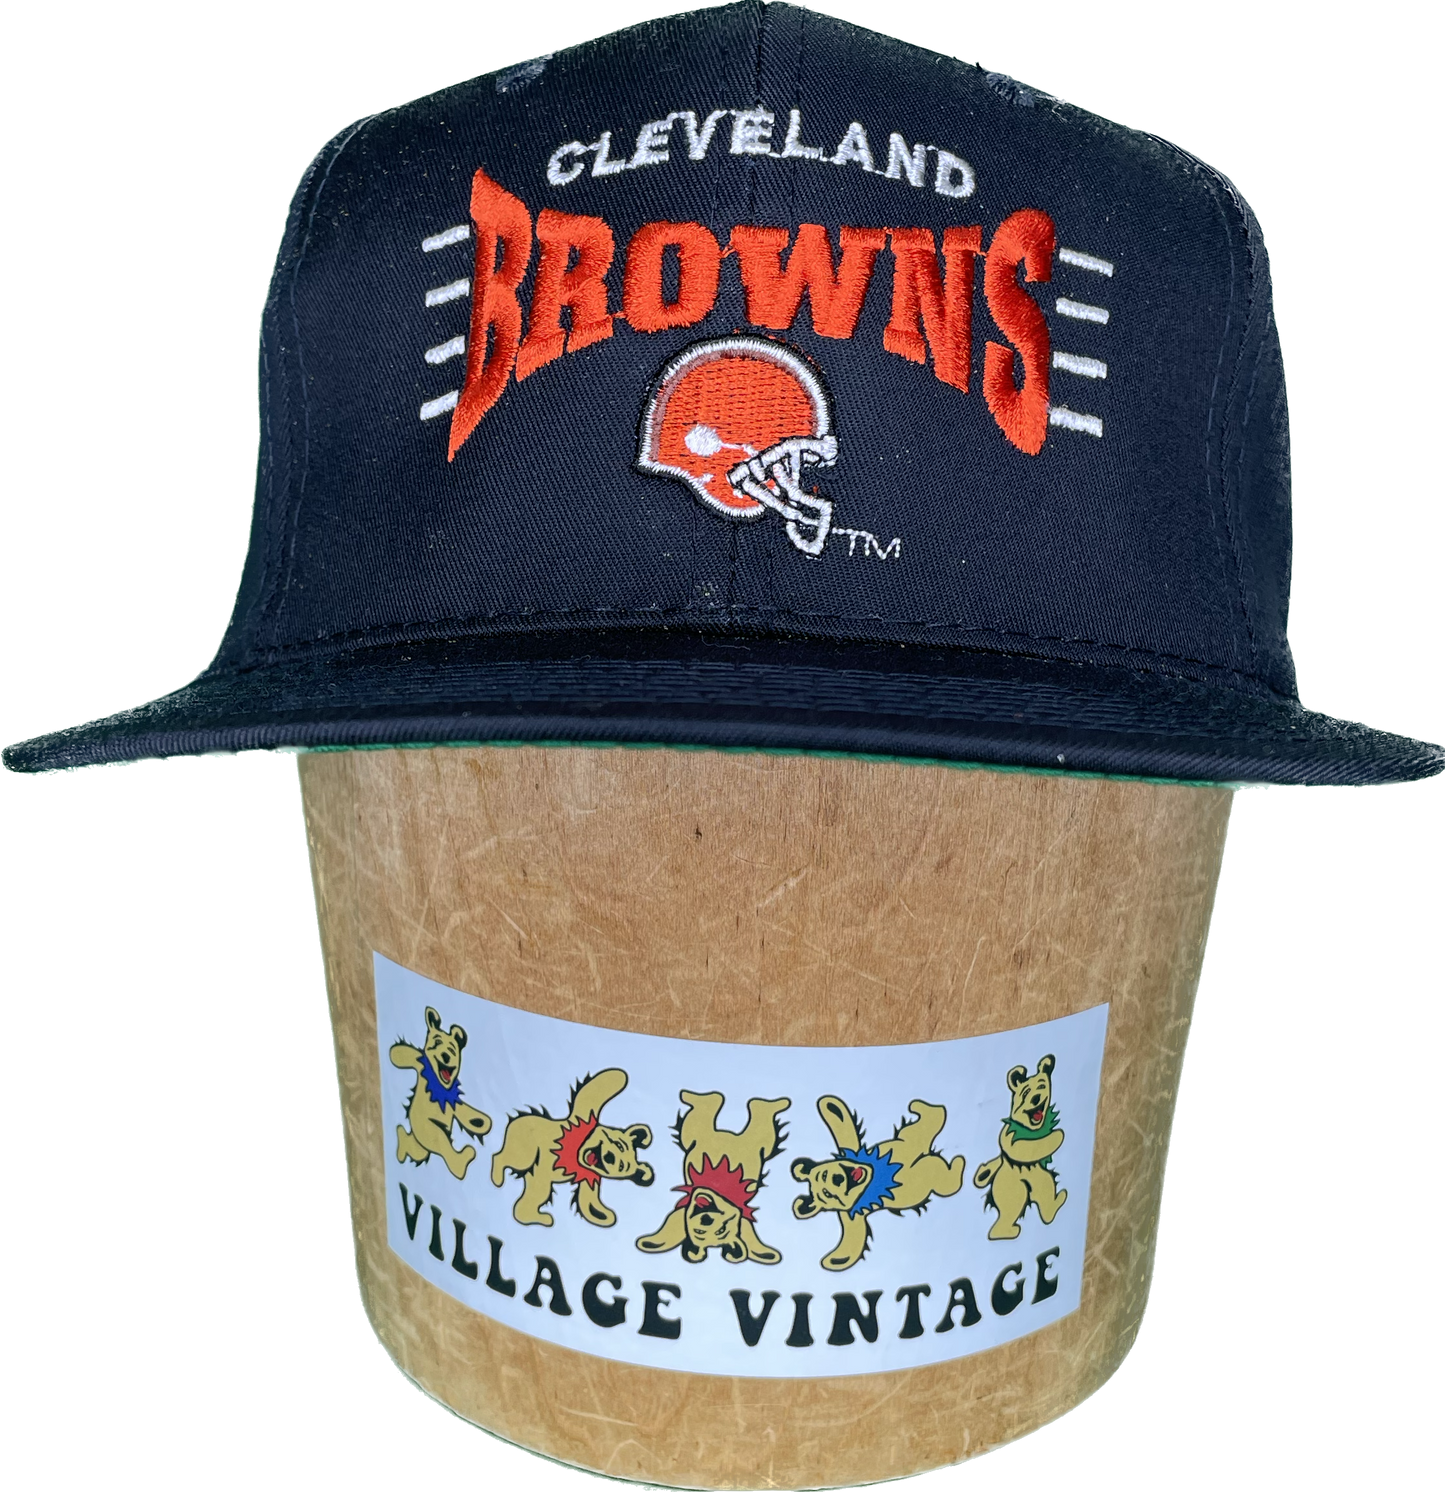 Vintage Cleveland Browns NFL Football SnapBack Trucker Hat